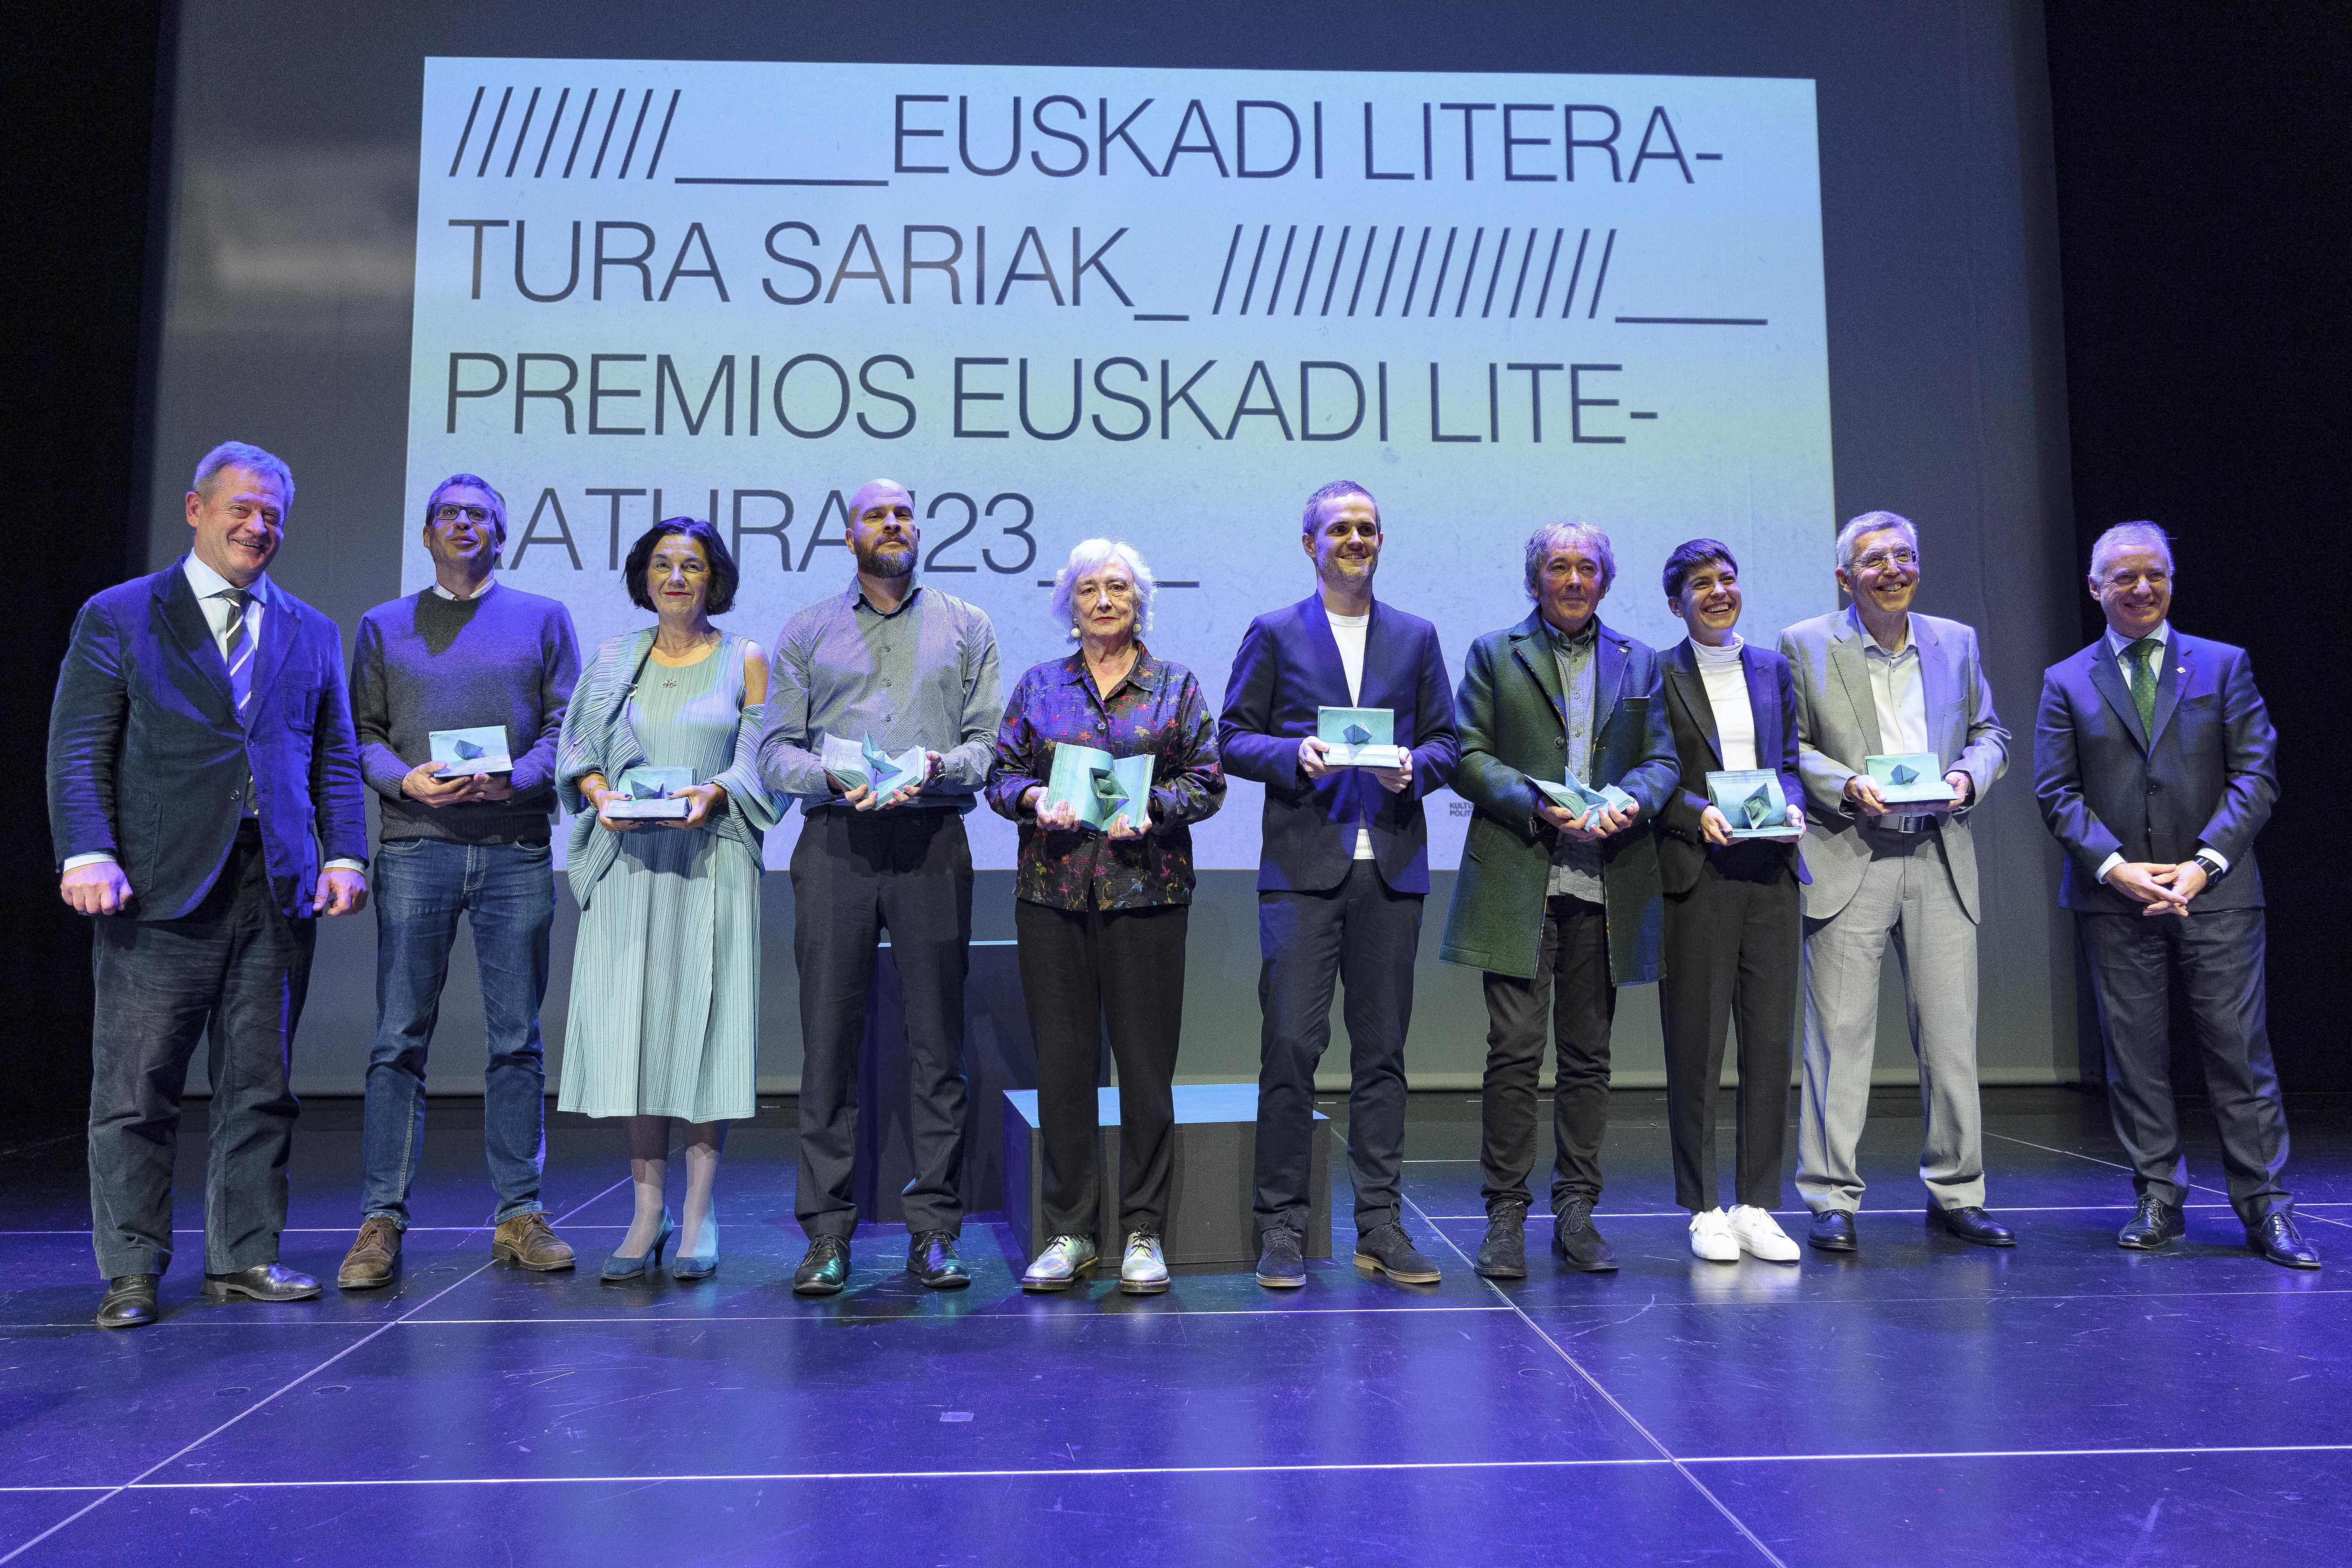 (ID_13351279) Euskadi literatura sariak